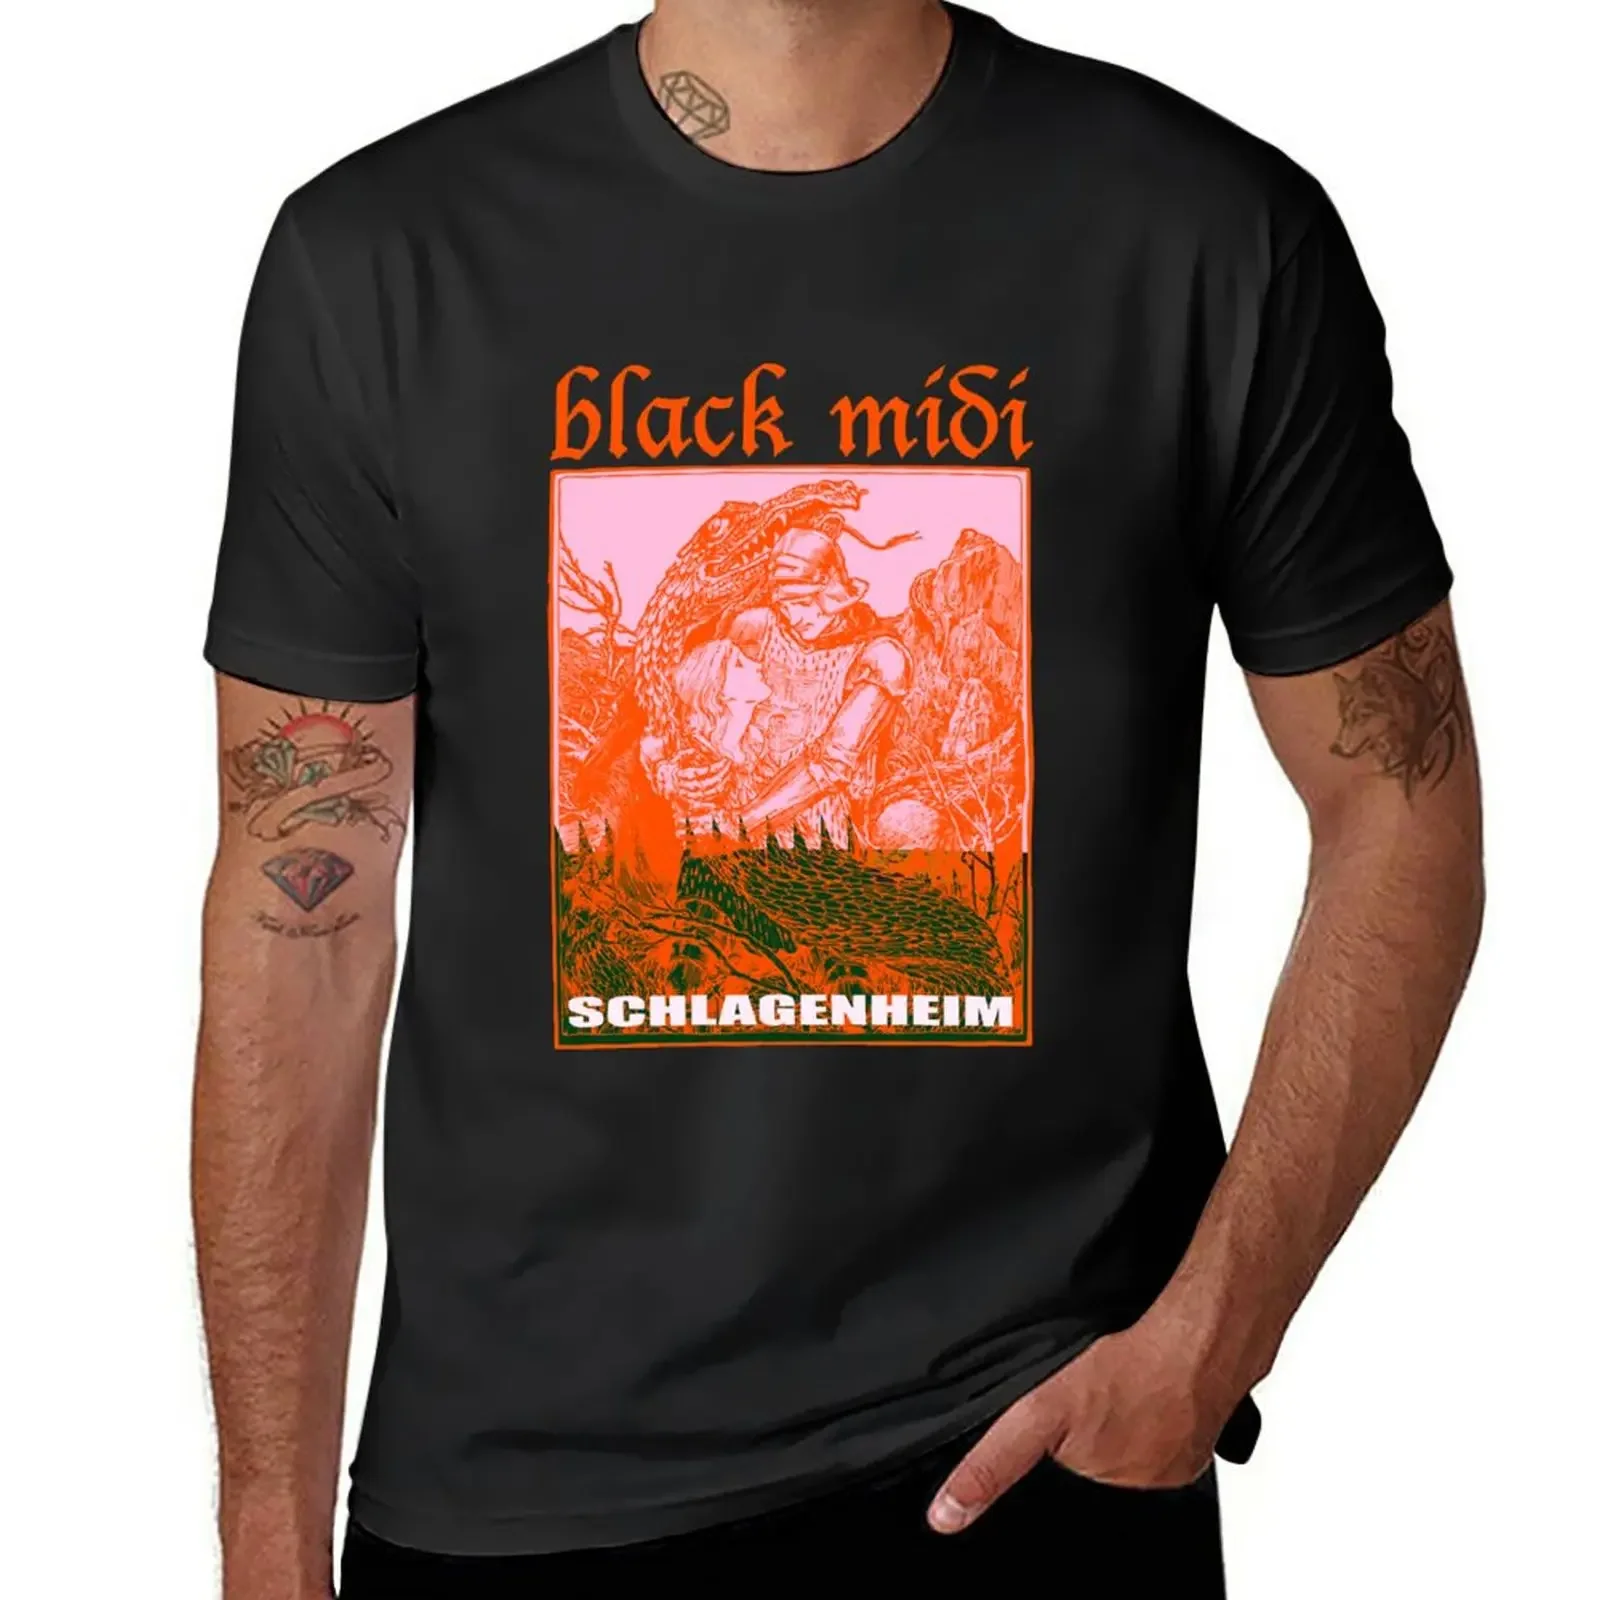 

Мужская быстросохнущая футболка с графическим принтом, черного цвета